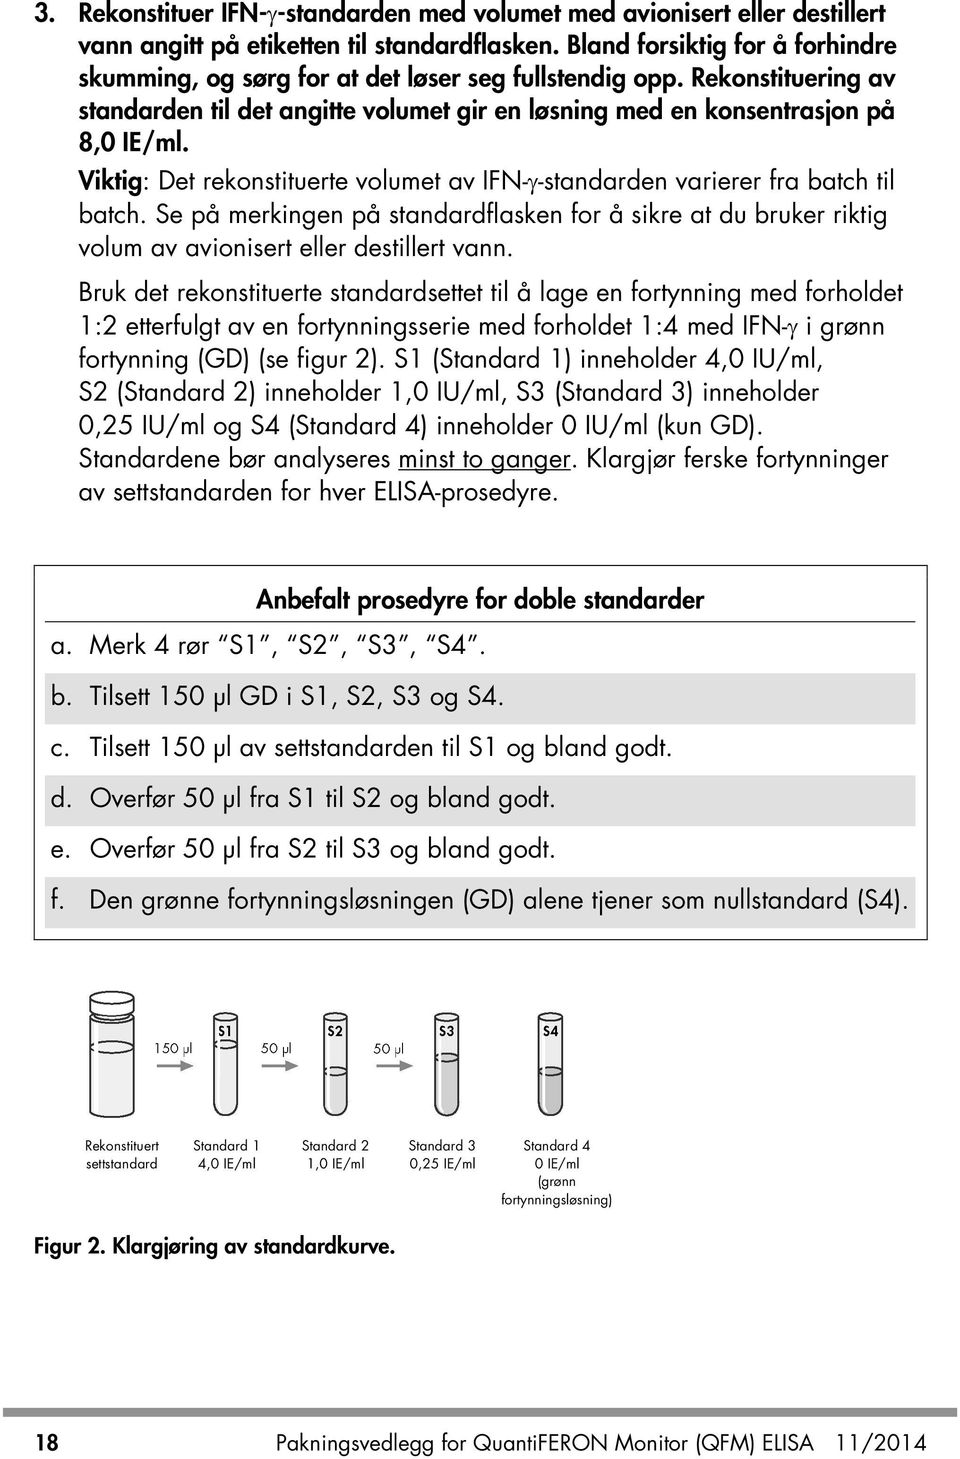 Viktig: Det rekonstituerte volumet av IFN-γ-standarden varierer fra batch til batch. Se på merkingen på standardflasken for å sikre at du bruker riktig volum av avionisert eller destillert vann.